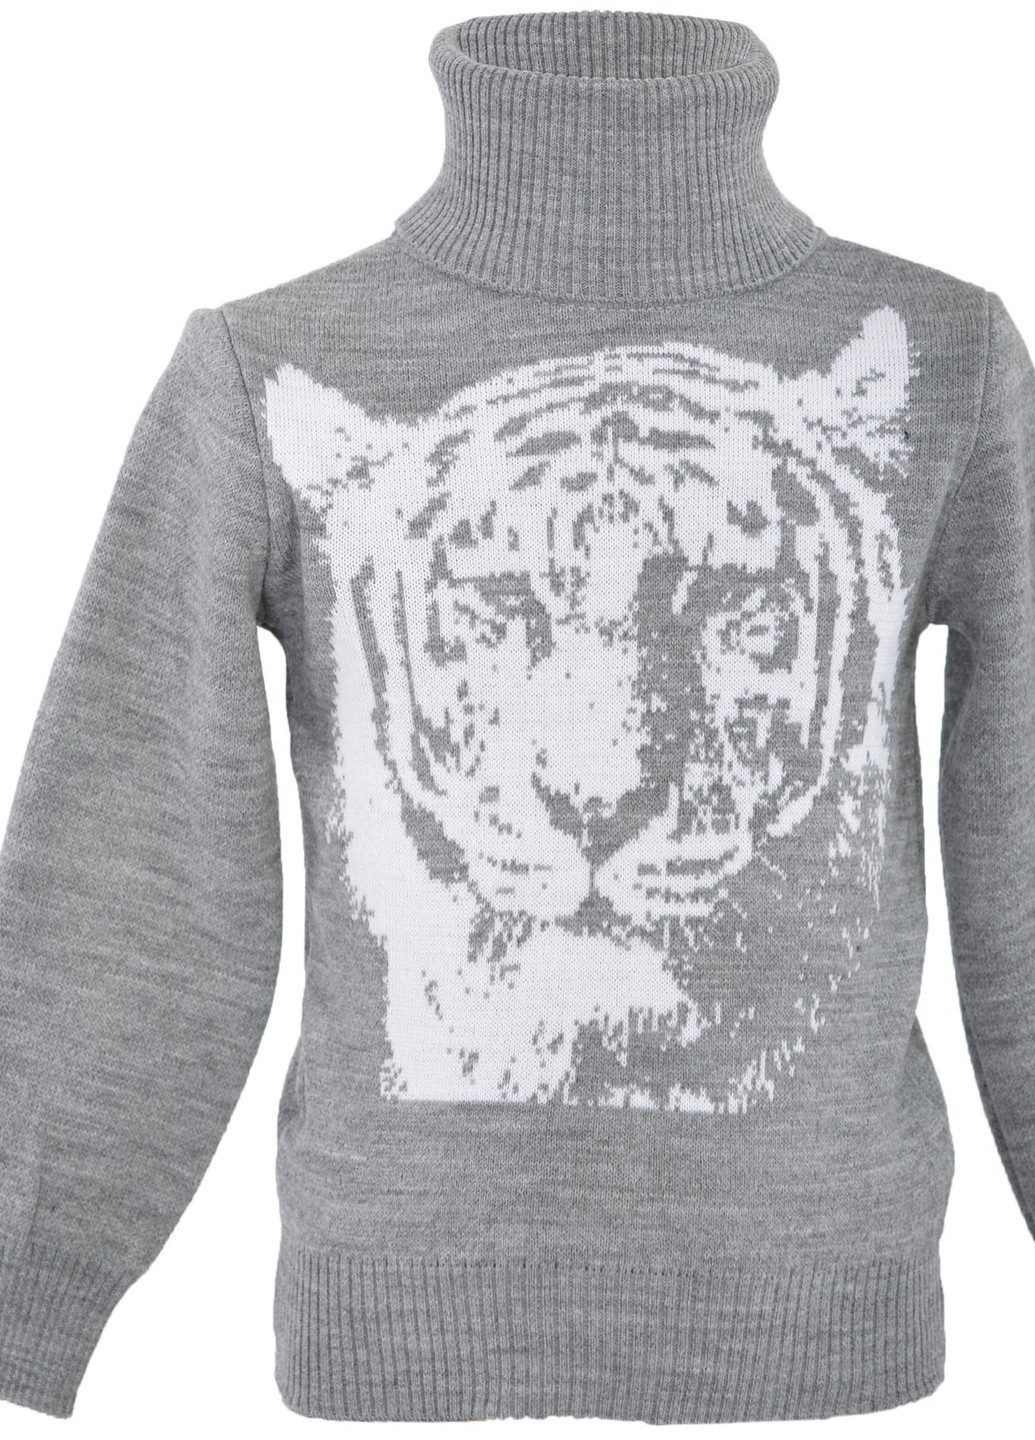 Серый светри светр на хлопчика тигр (тигр)17562-706 Lemanta